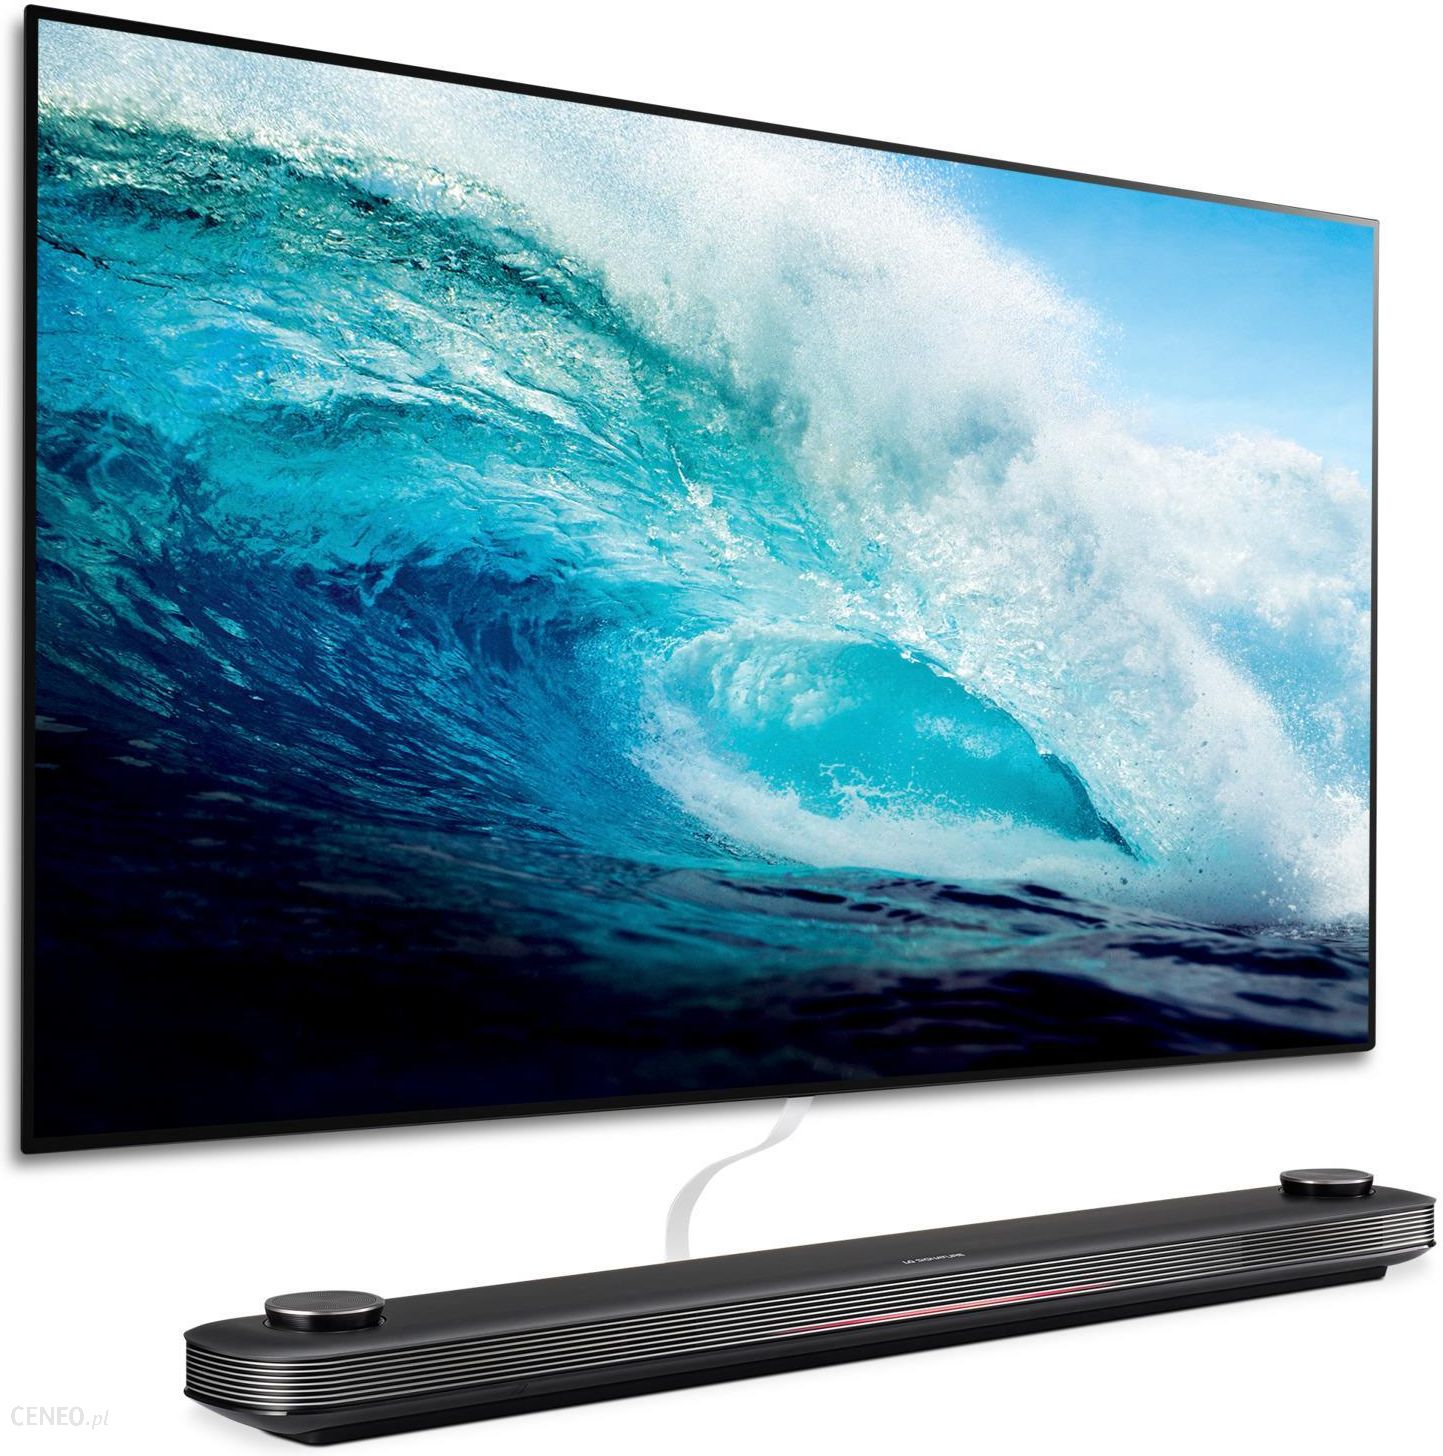 Купить хороший телевизор 65 дюймов. LG Signature OLED. Телевизор LG oled65w8. LG OLED 65. Телевизор LG OLED 65.